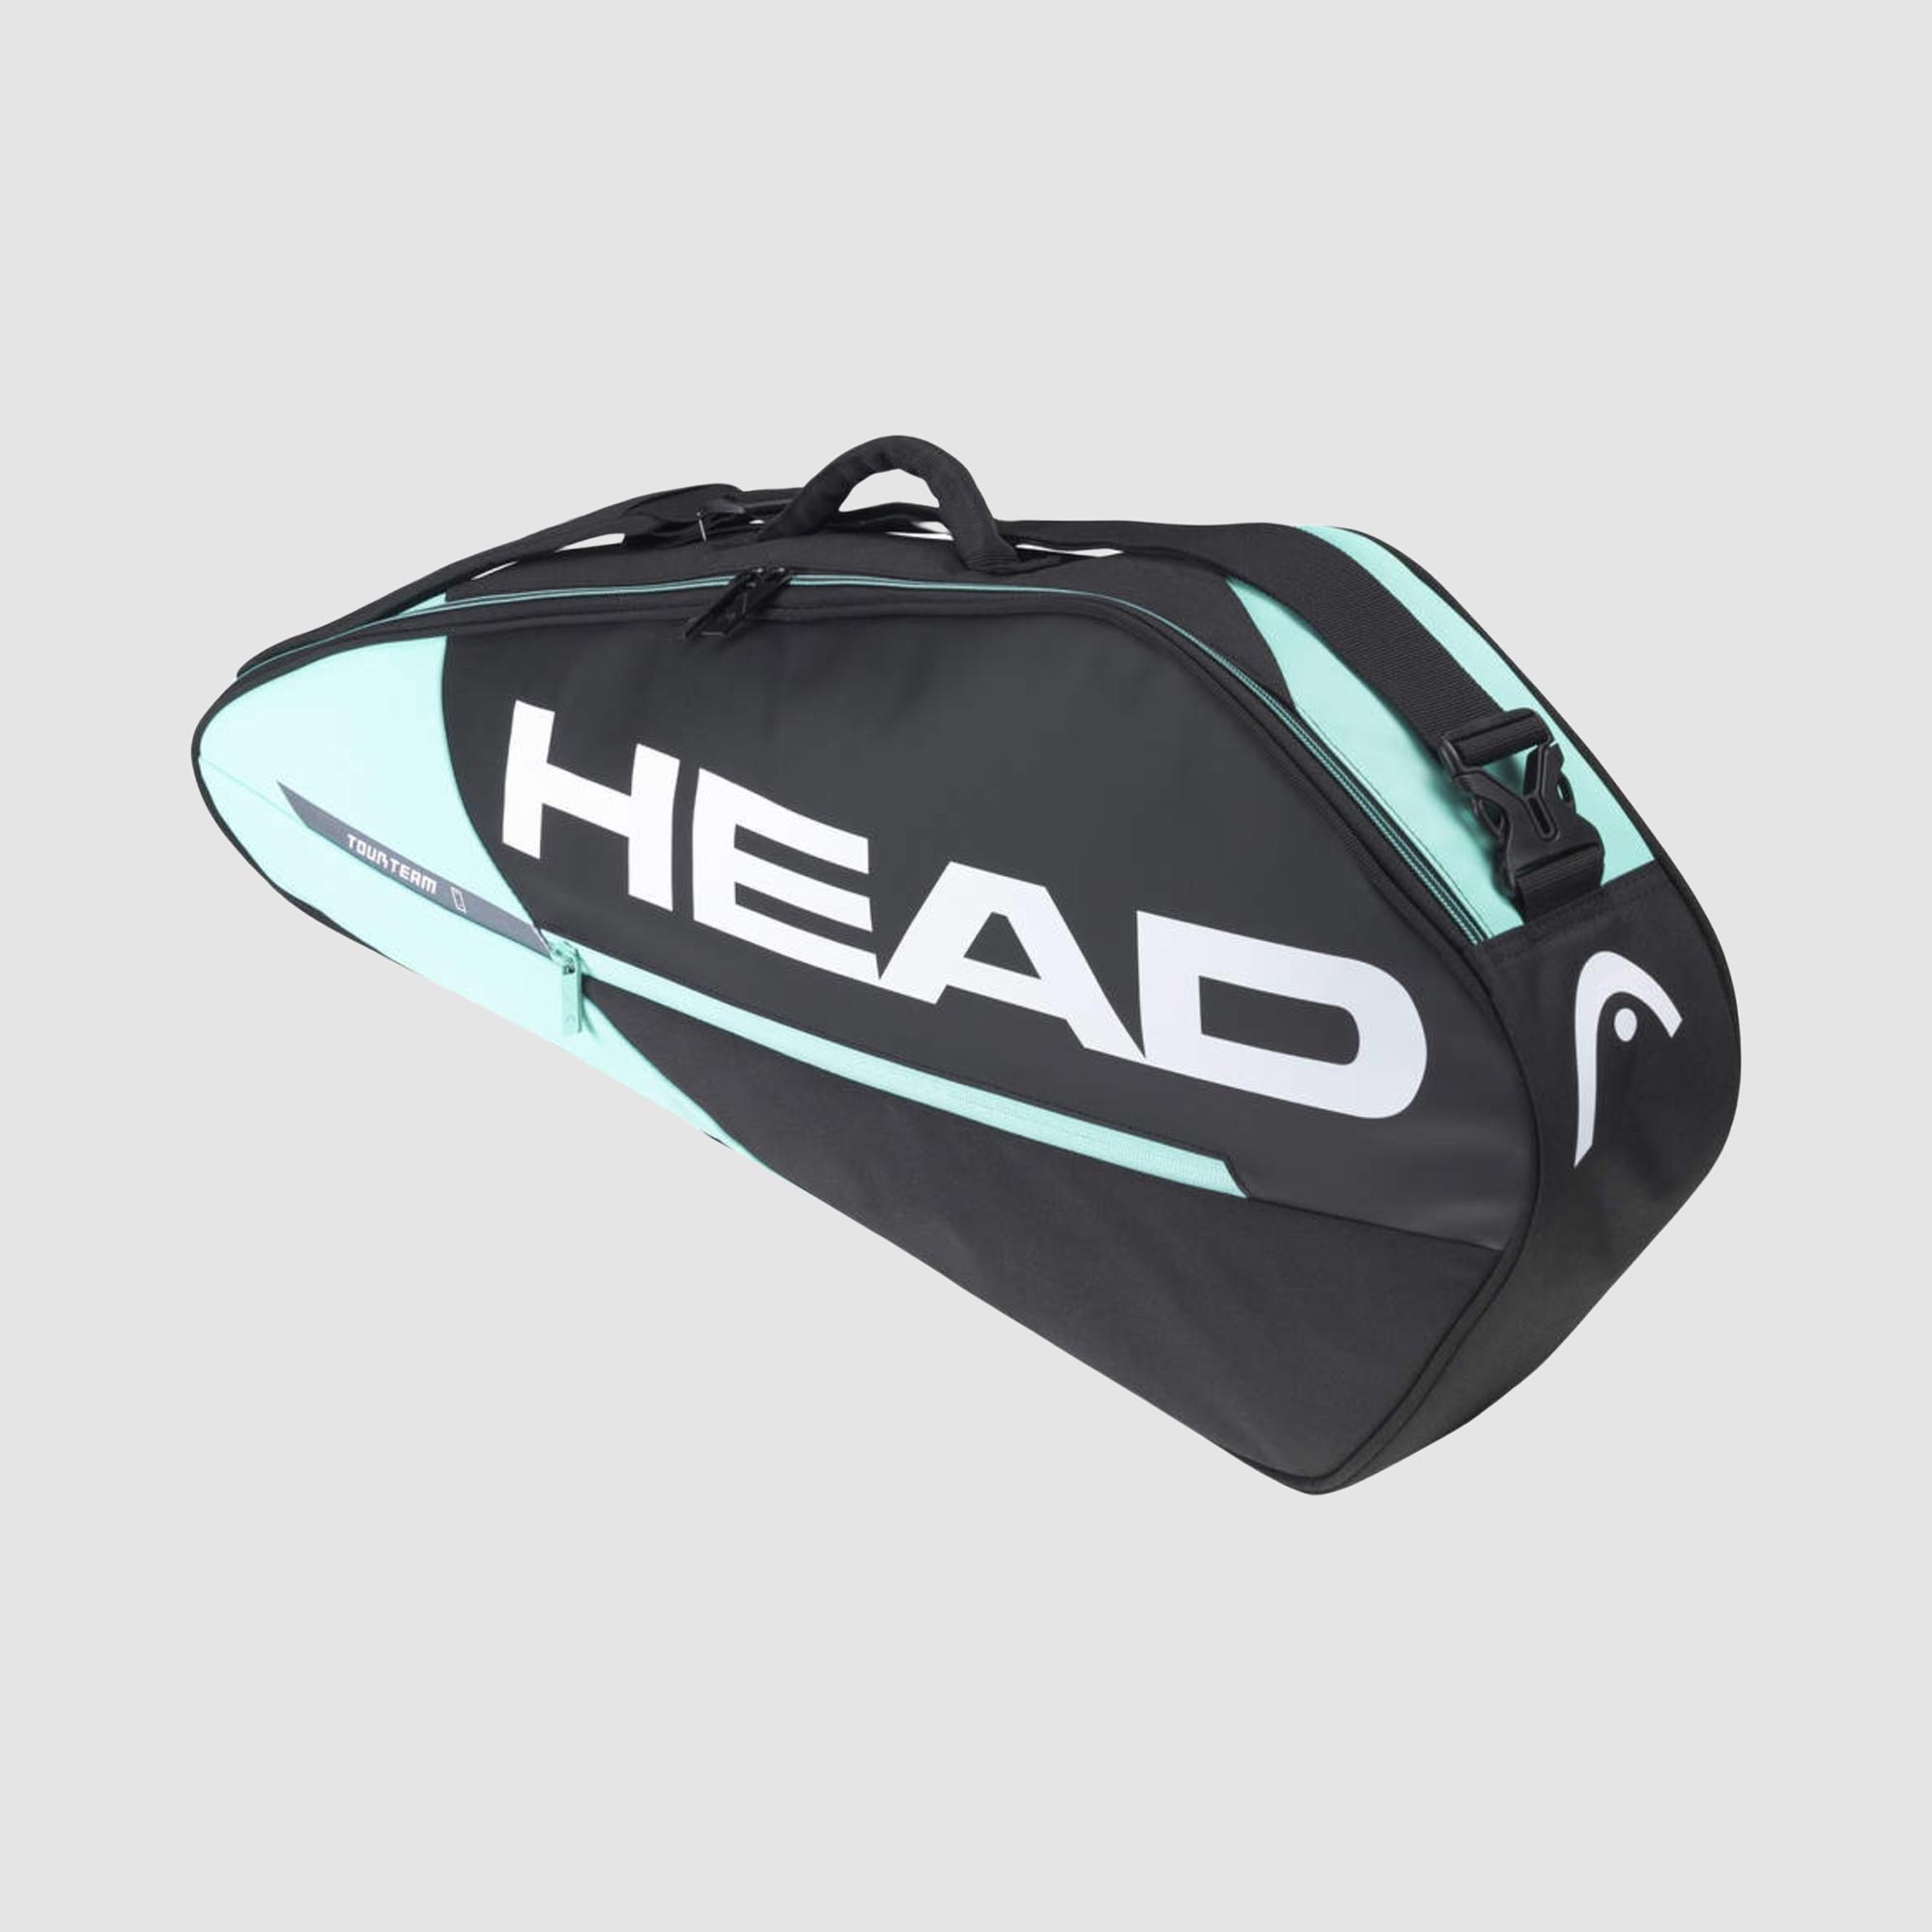 HEAD 22 Tour Team 3R Pro Racquet Bag Black/Mint